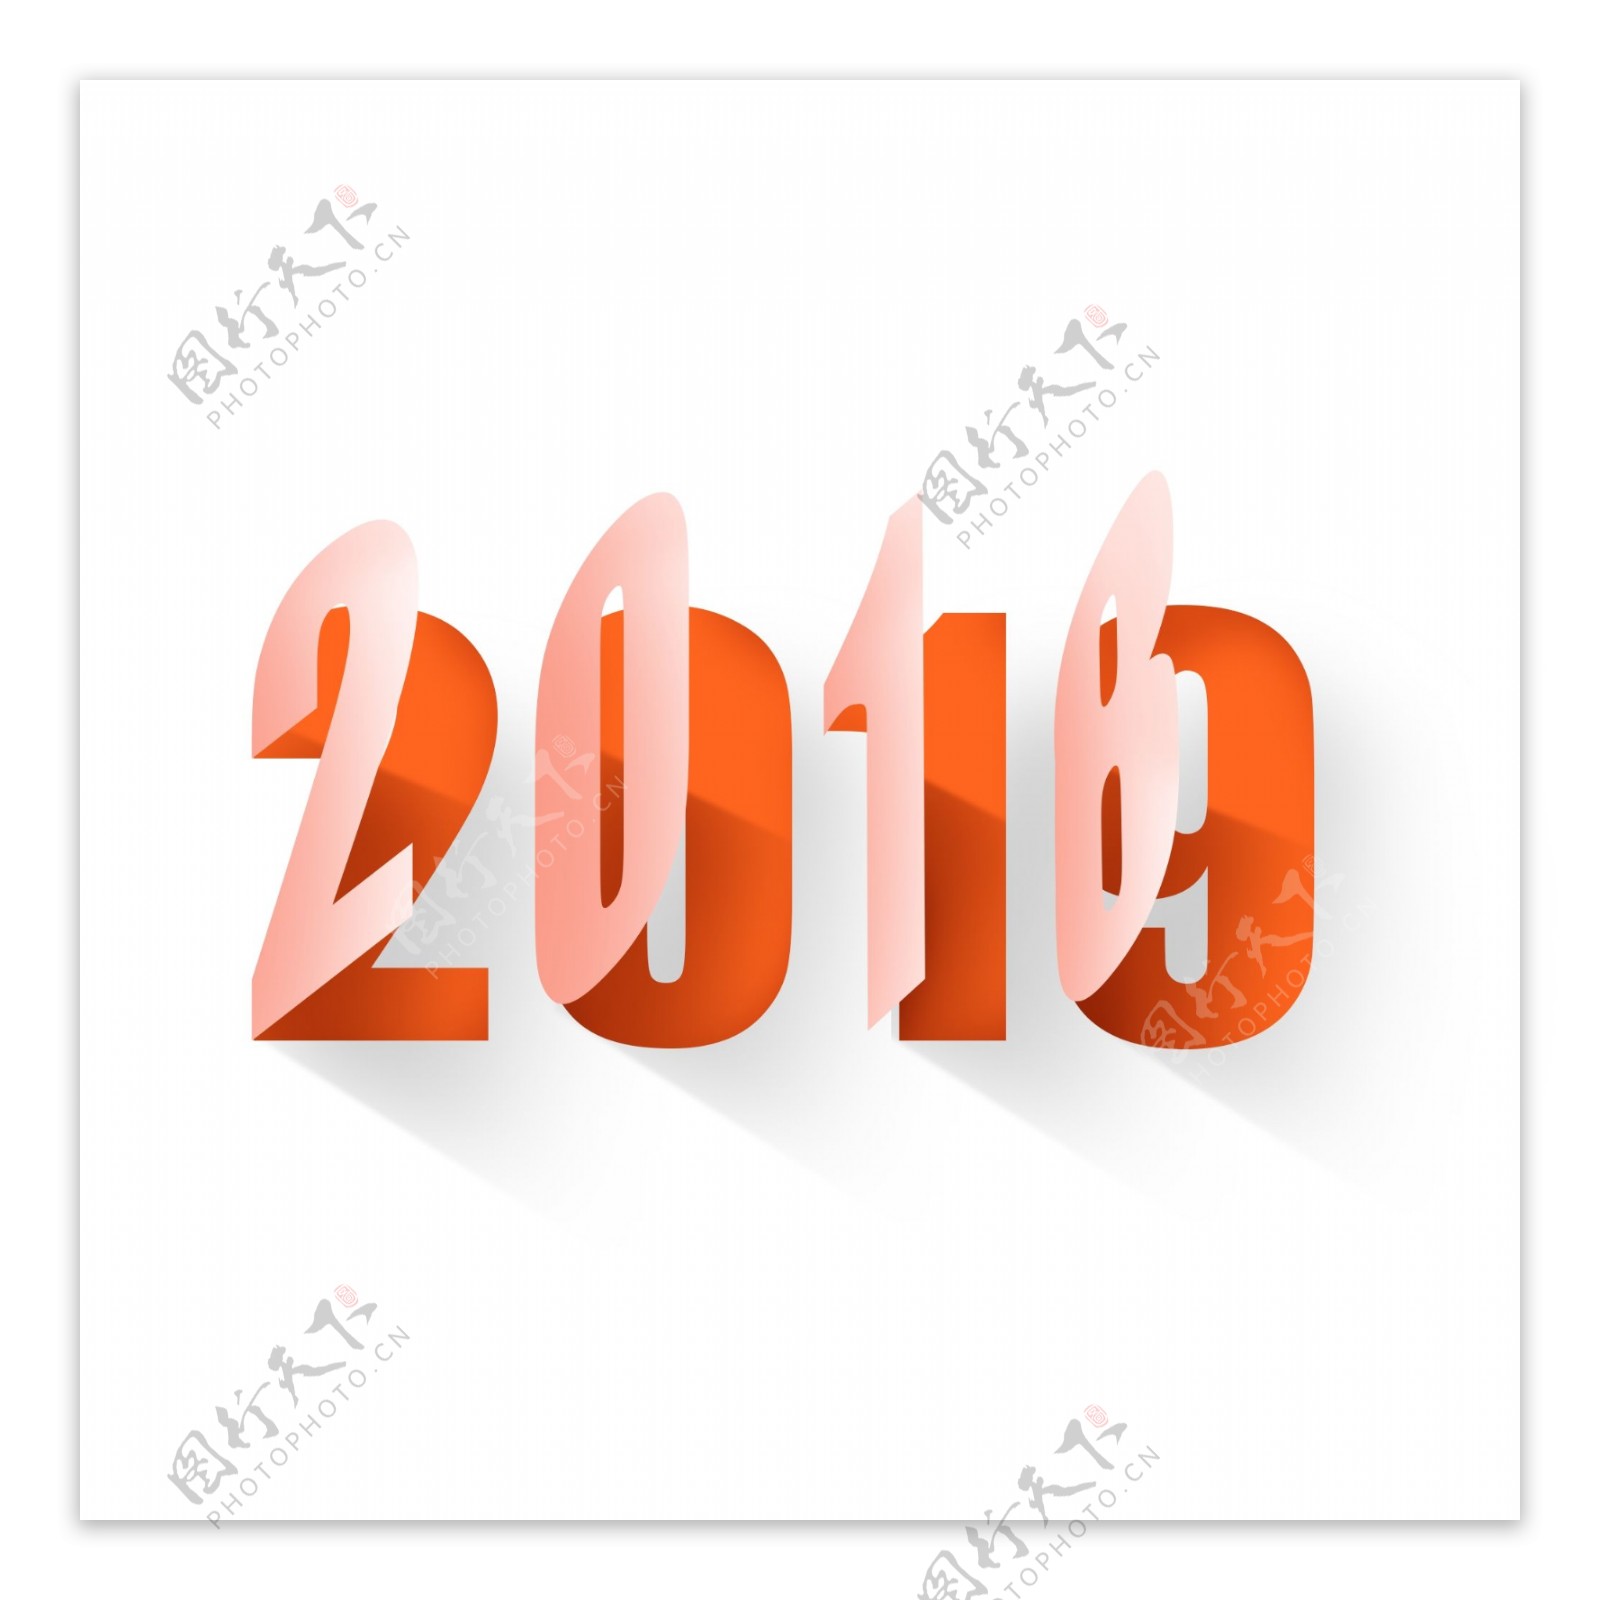 20182019跨年字体元素设计